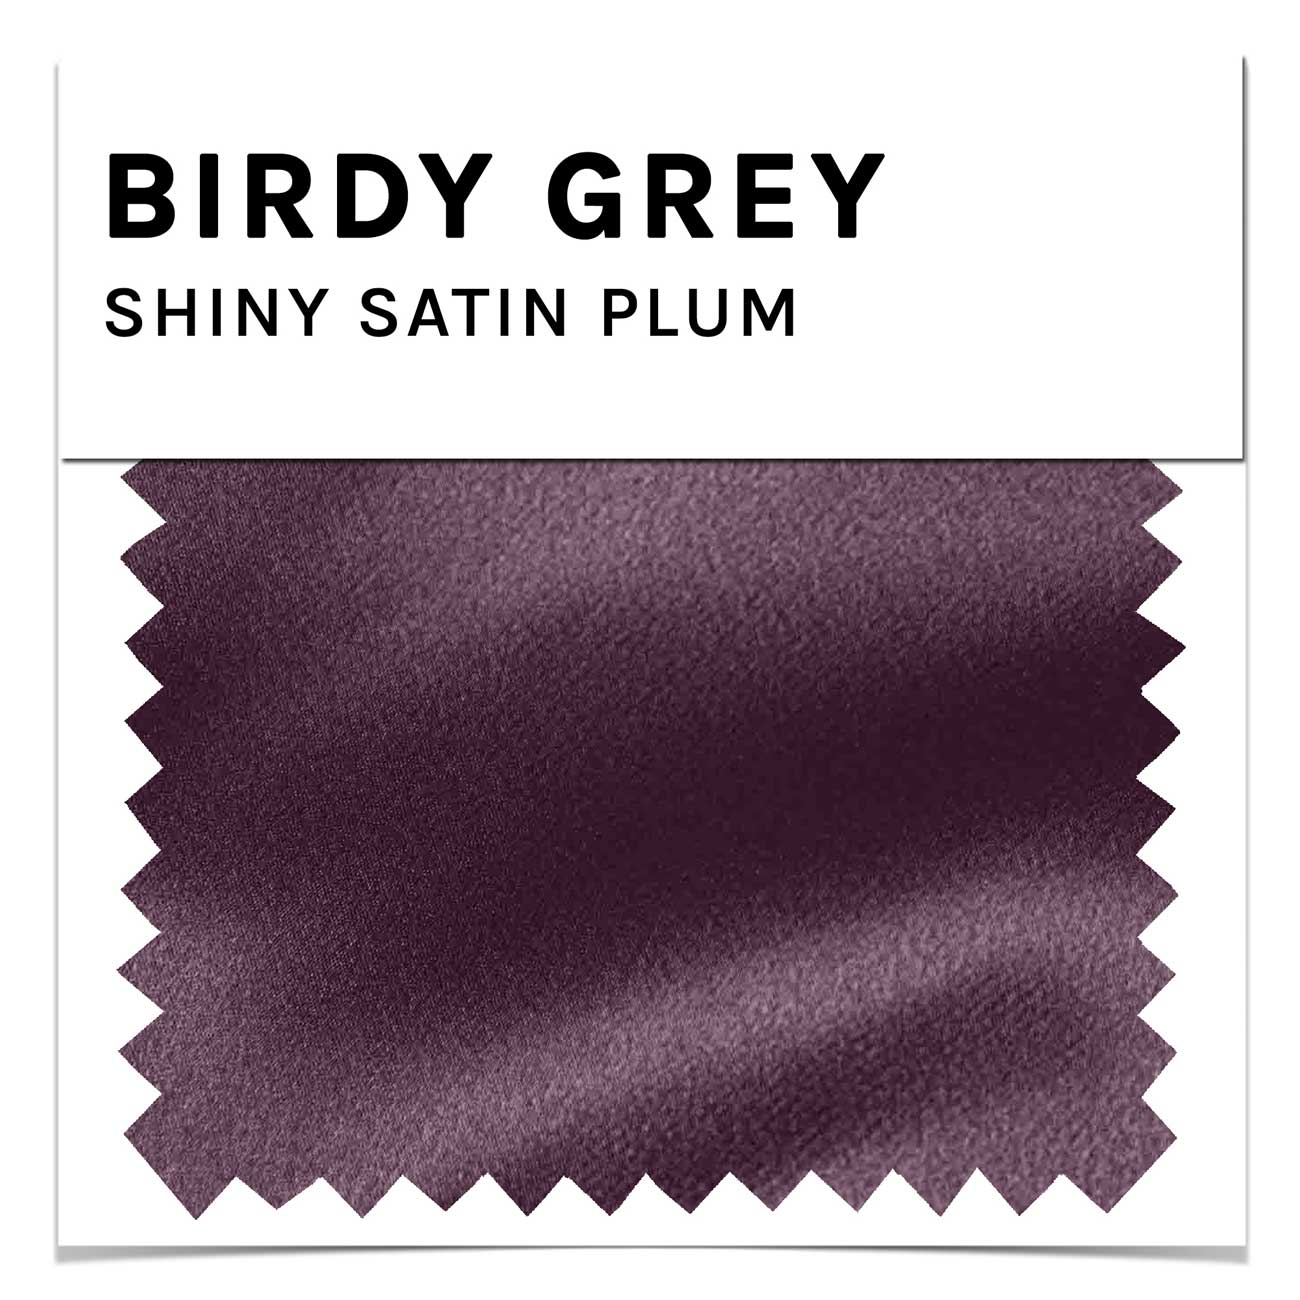 Swatch - Shiny Satin in Plum by Birdy Grey